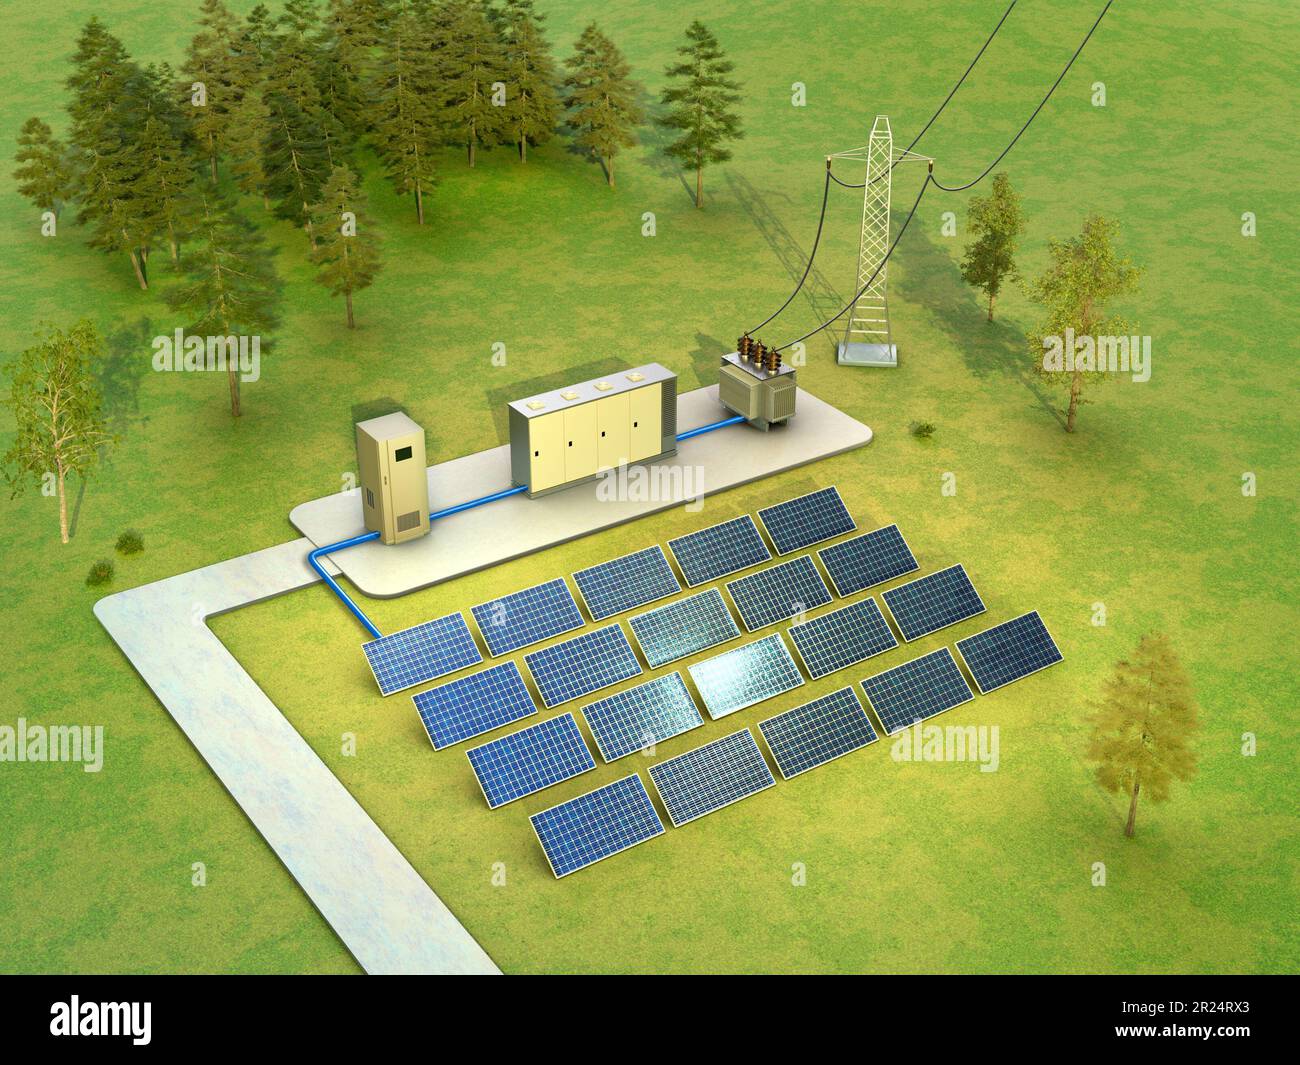 Schéma de la centrale solaire comprenant un onduleur, une batterie et un transformateur. Illustration numérique, rendu 3D. Banque D'Images